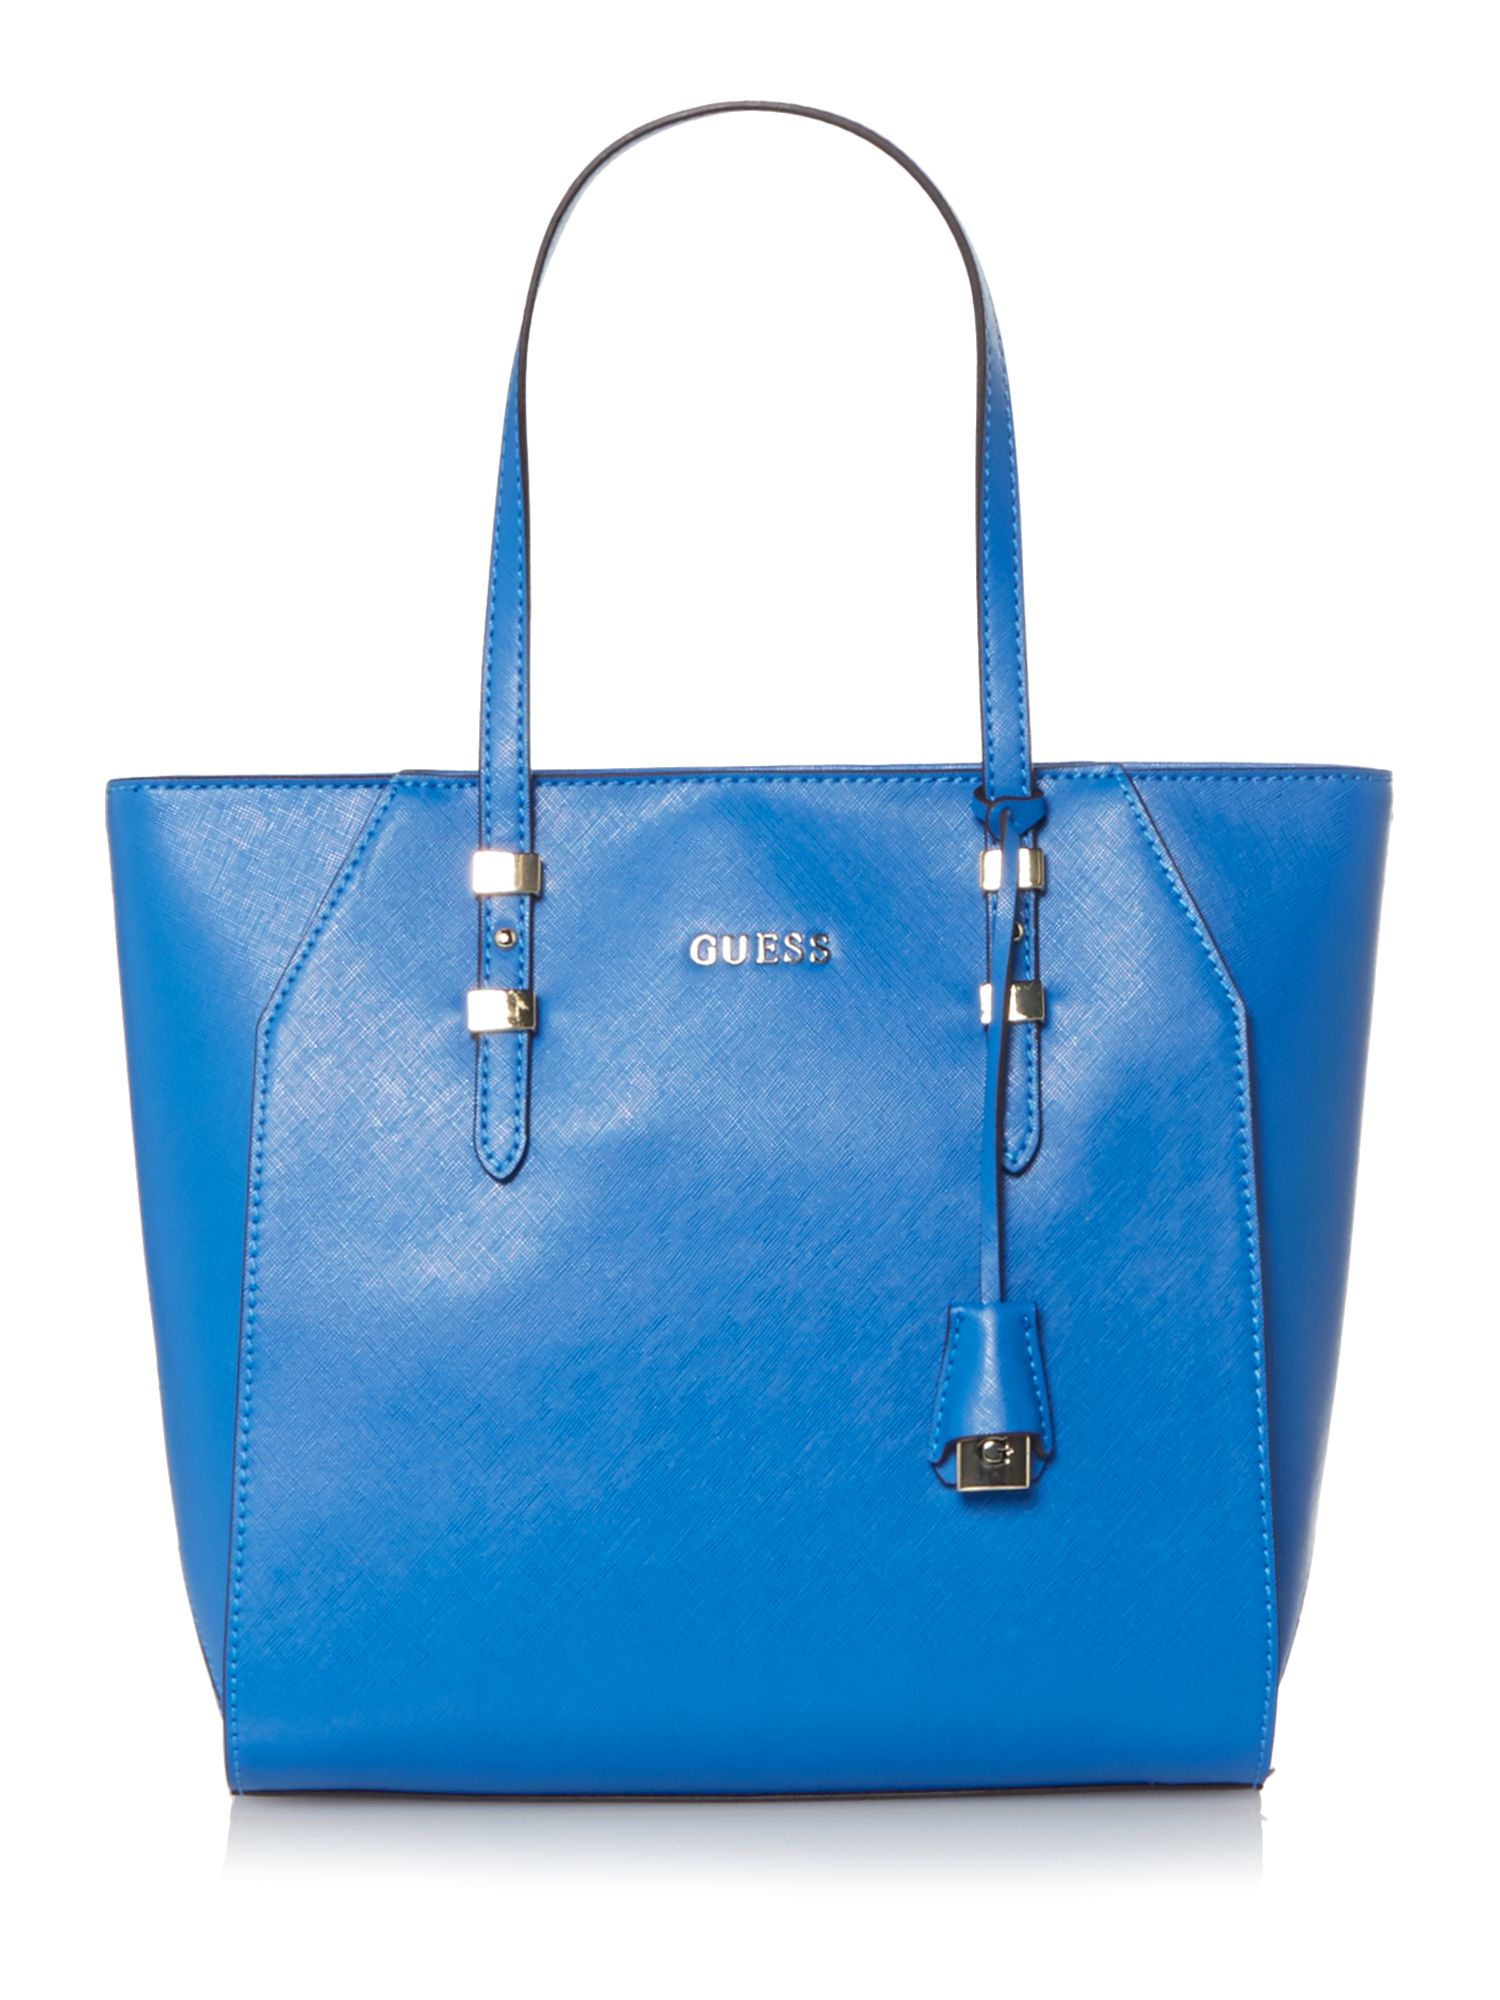 Guess Gigi Blue Tote Shoulder Bag in Blue | Lyst